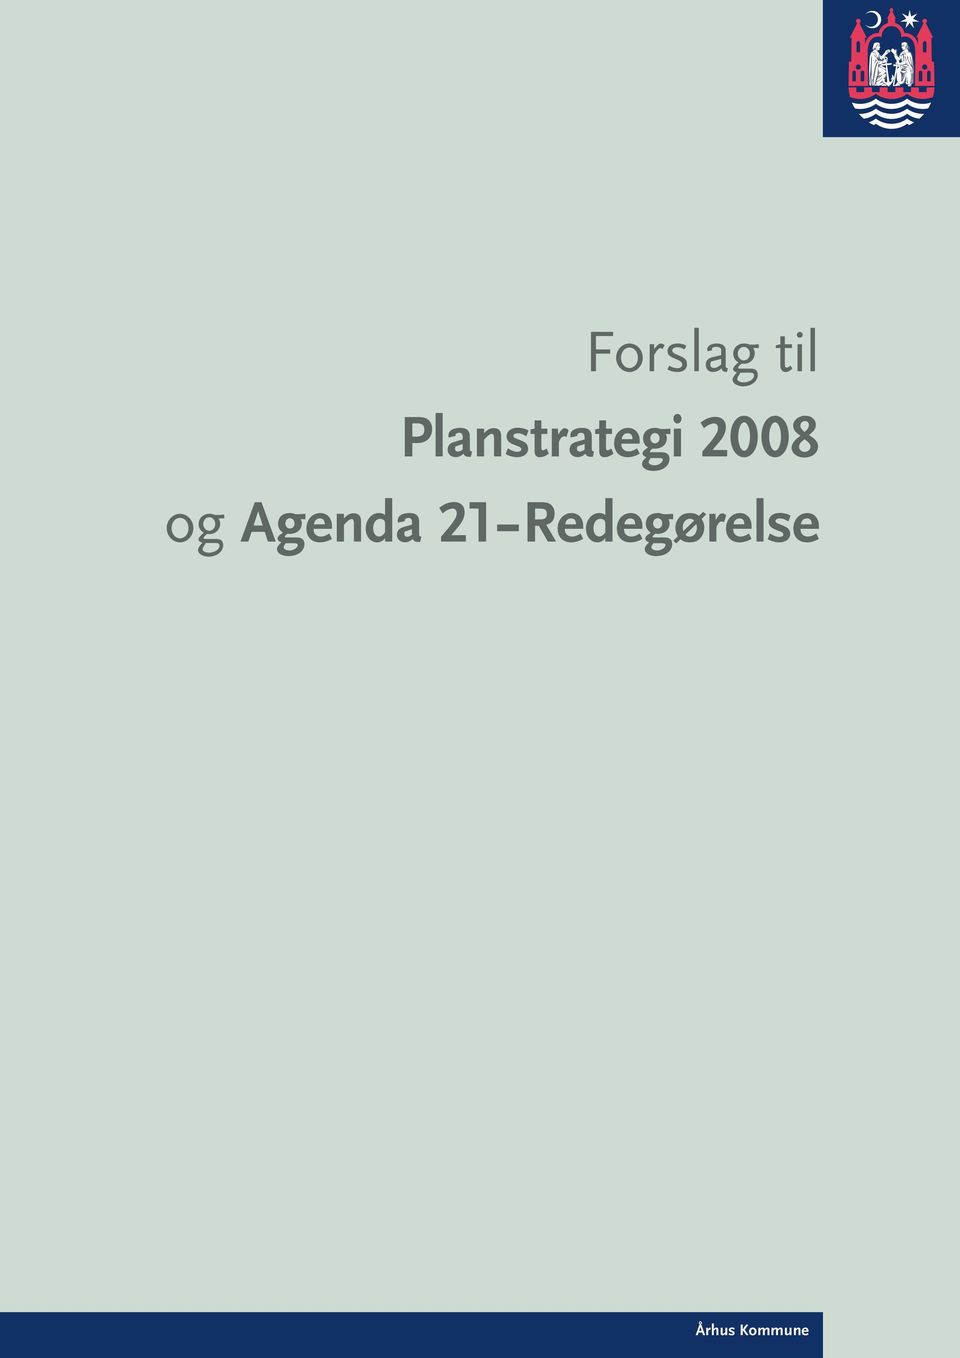 2008 og Agenda